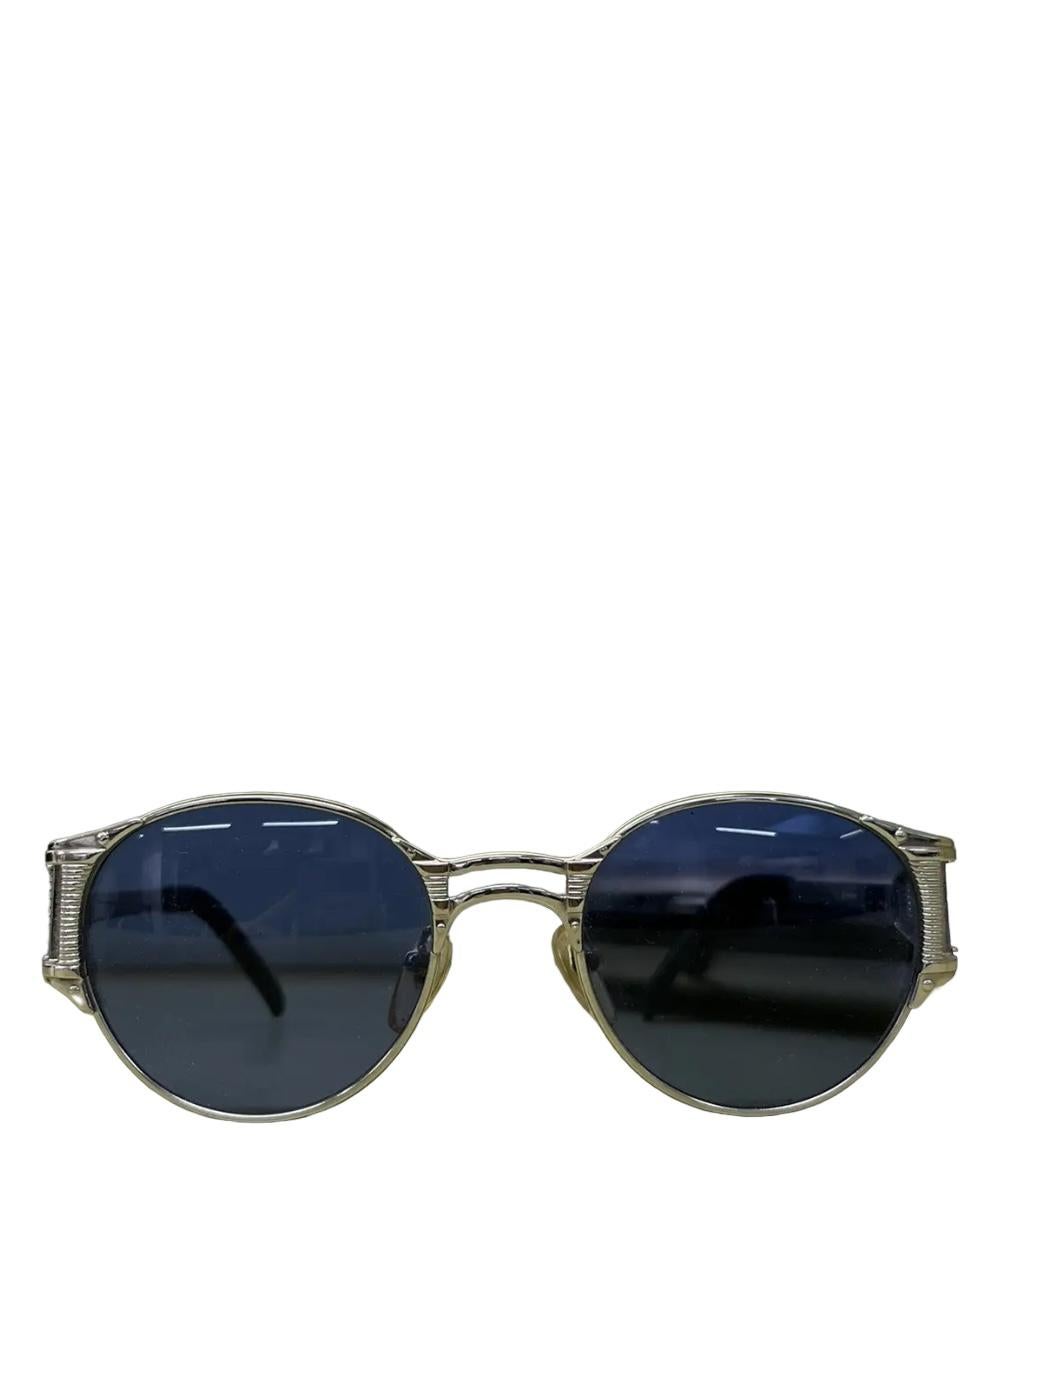 Jean Paul Gaultier
Lunettes de soleil en métal Steam Punk Spring

Magnifiques lunettes de soleil Jean Paul Gaultier en métal à ressort avec l'étui d'origine. En très bon état, fabriqué en Italie.